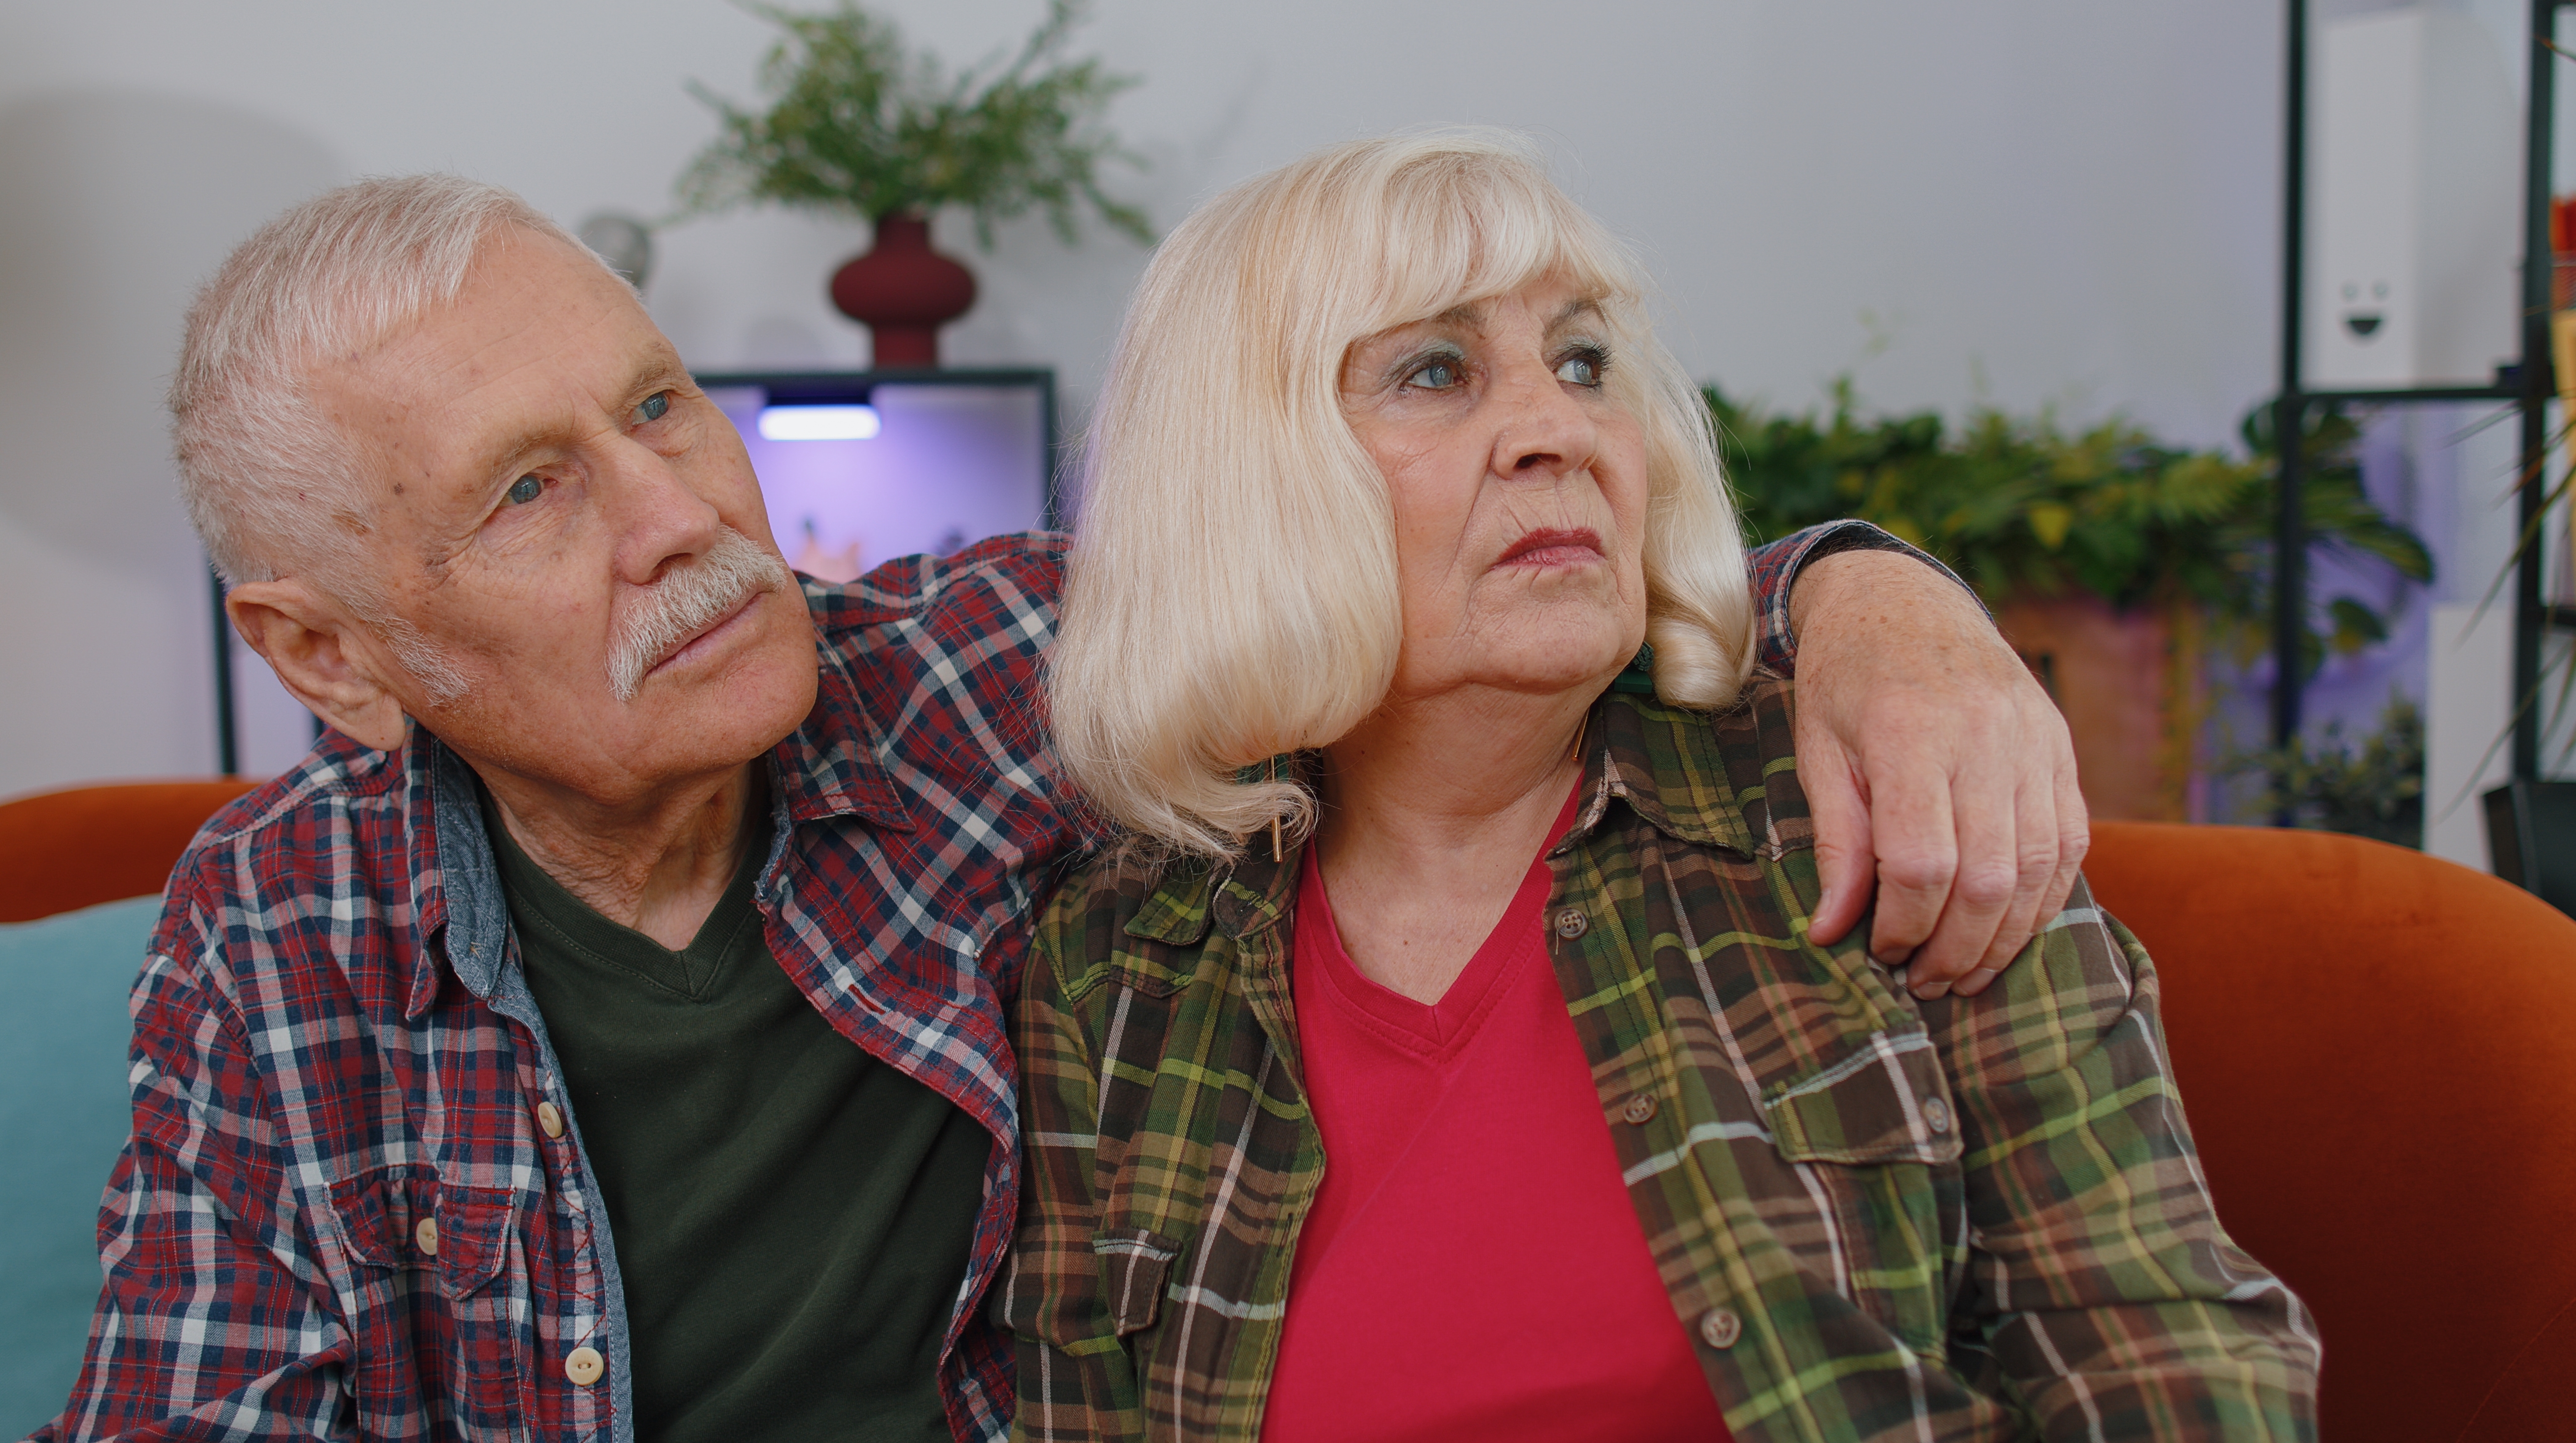 Genervte Großeltern sitzen zu Hause | Quelle: Shutterstock